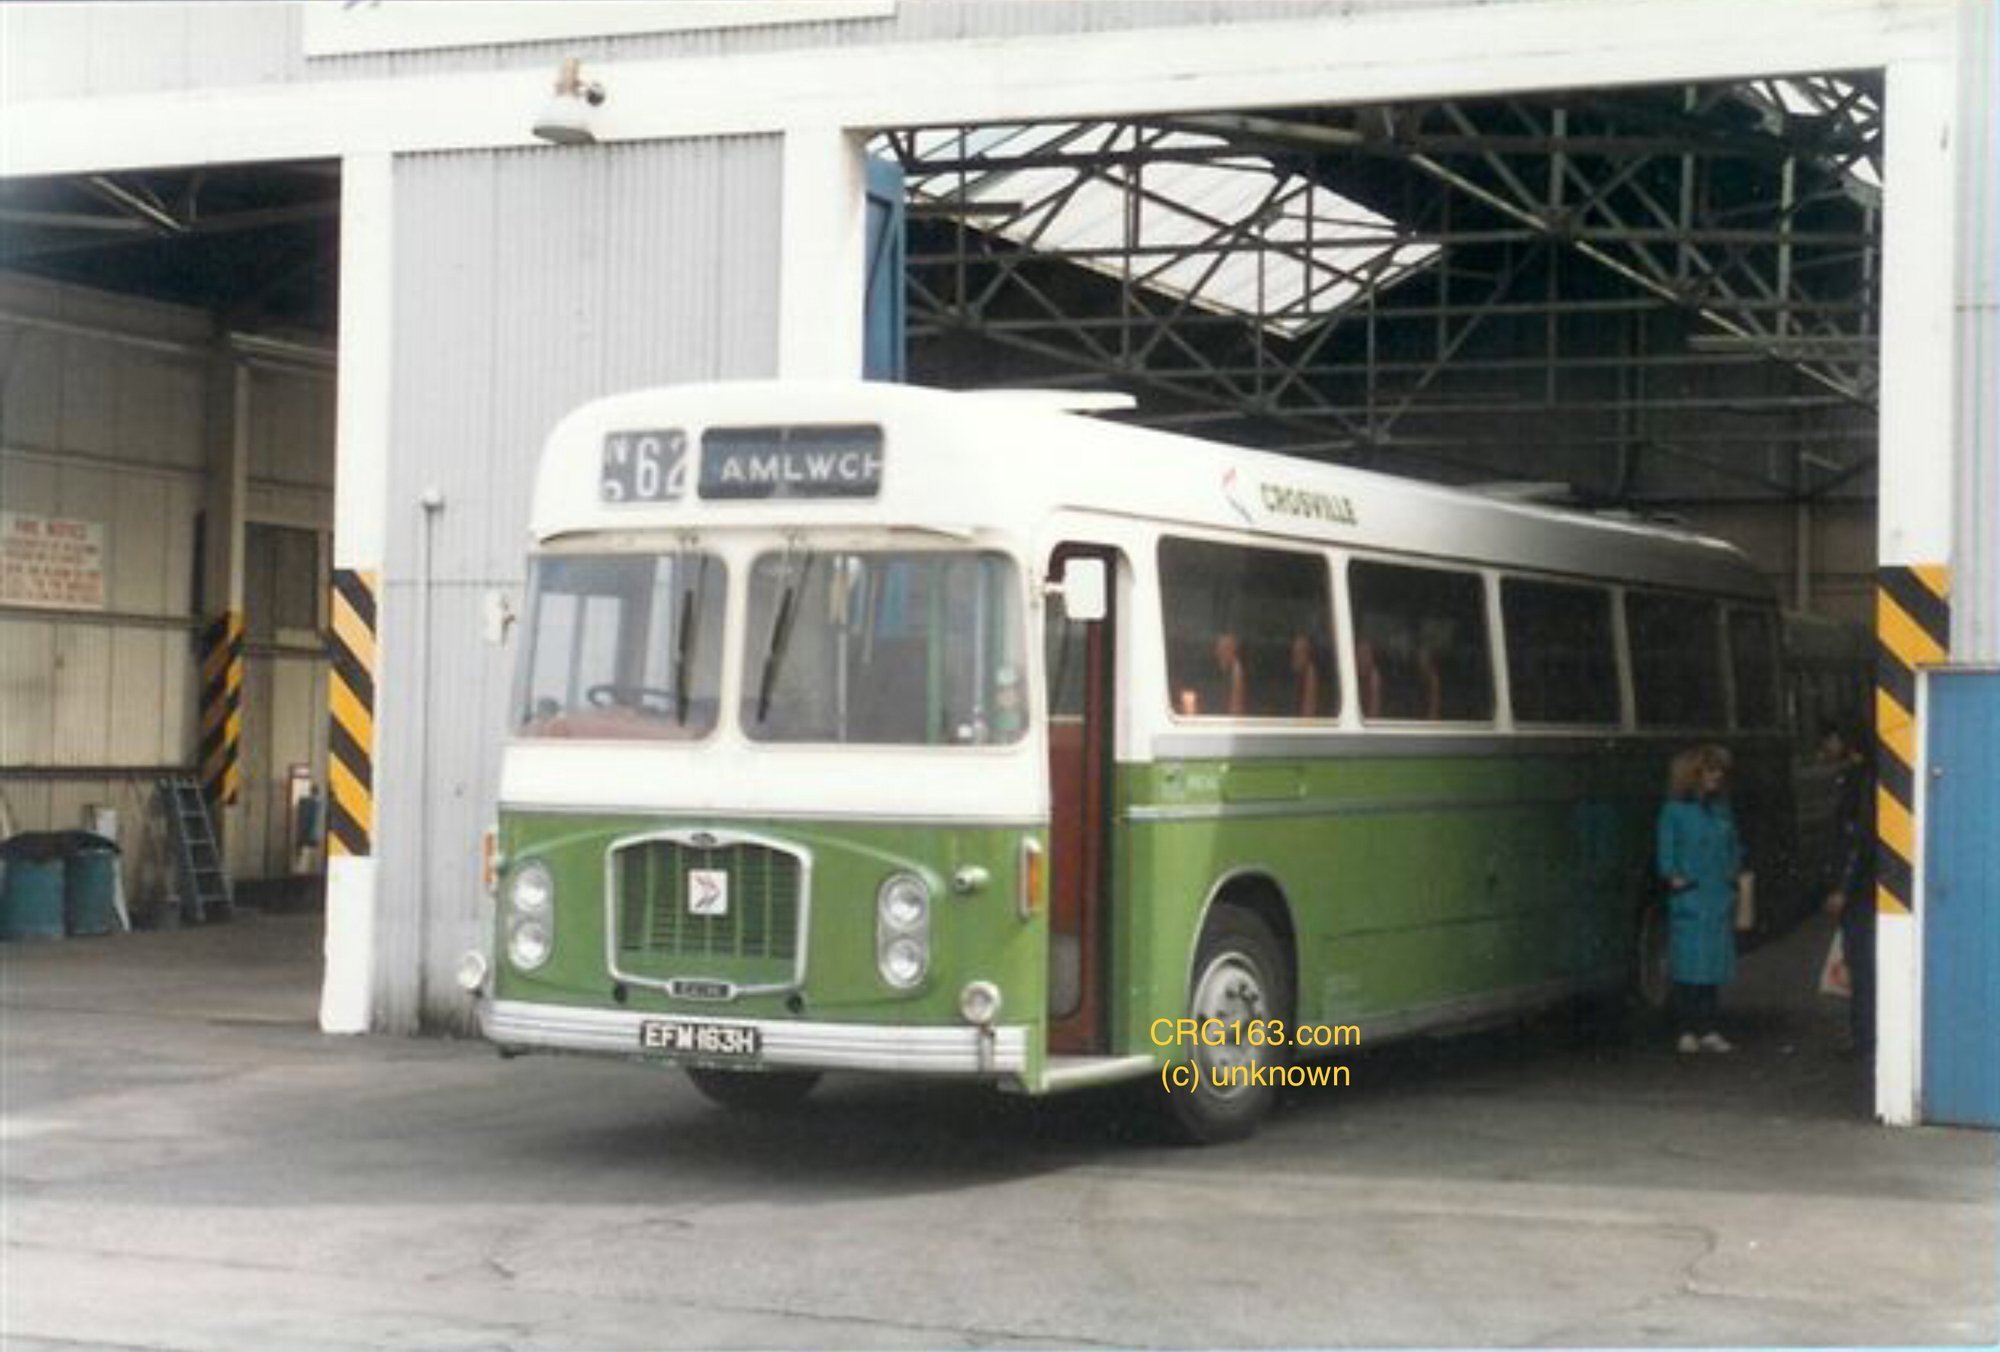 ERG163 at Crosville’s Amlwch depot